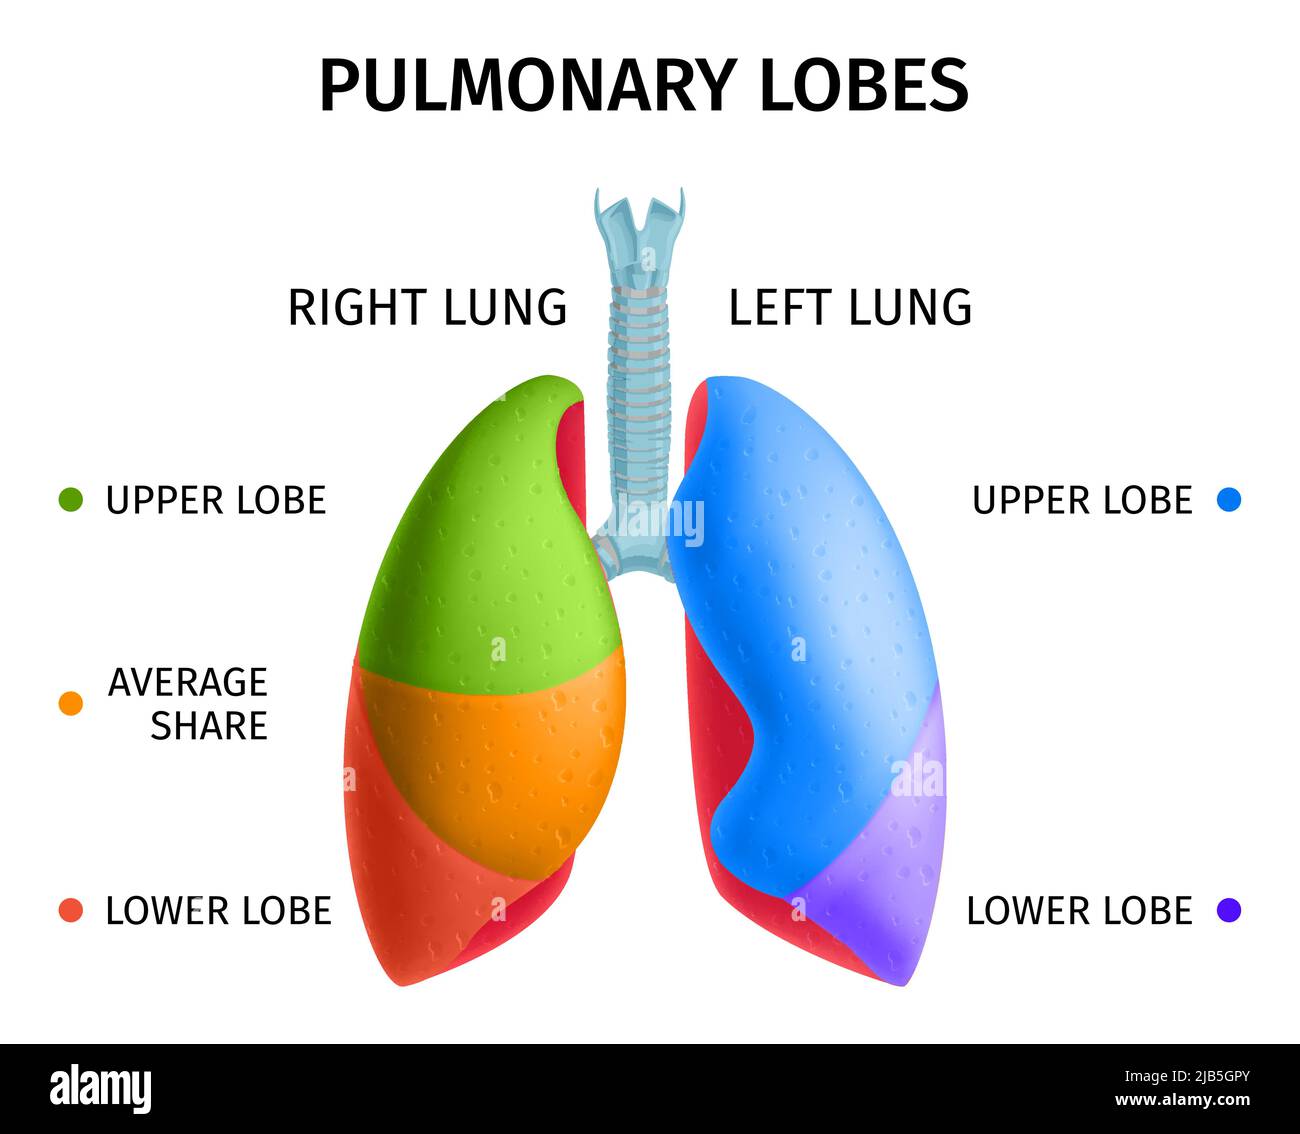 Anatomie-Diagramm der oberen unteren Lappen des menschlichen Lungenrespiratorsystems informative bunte Infotafel medizinisches Poster Vektorgrafik Stock Vektor